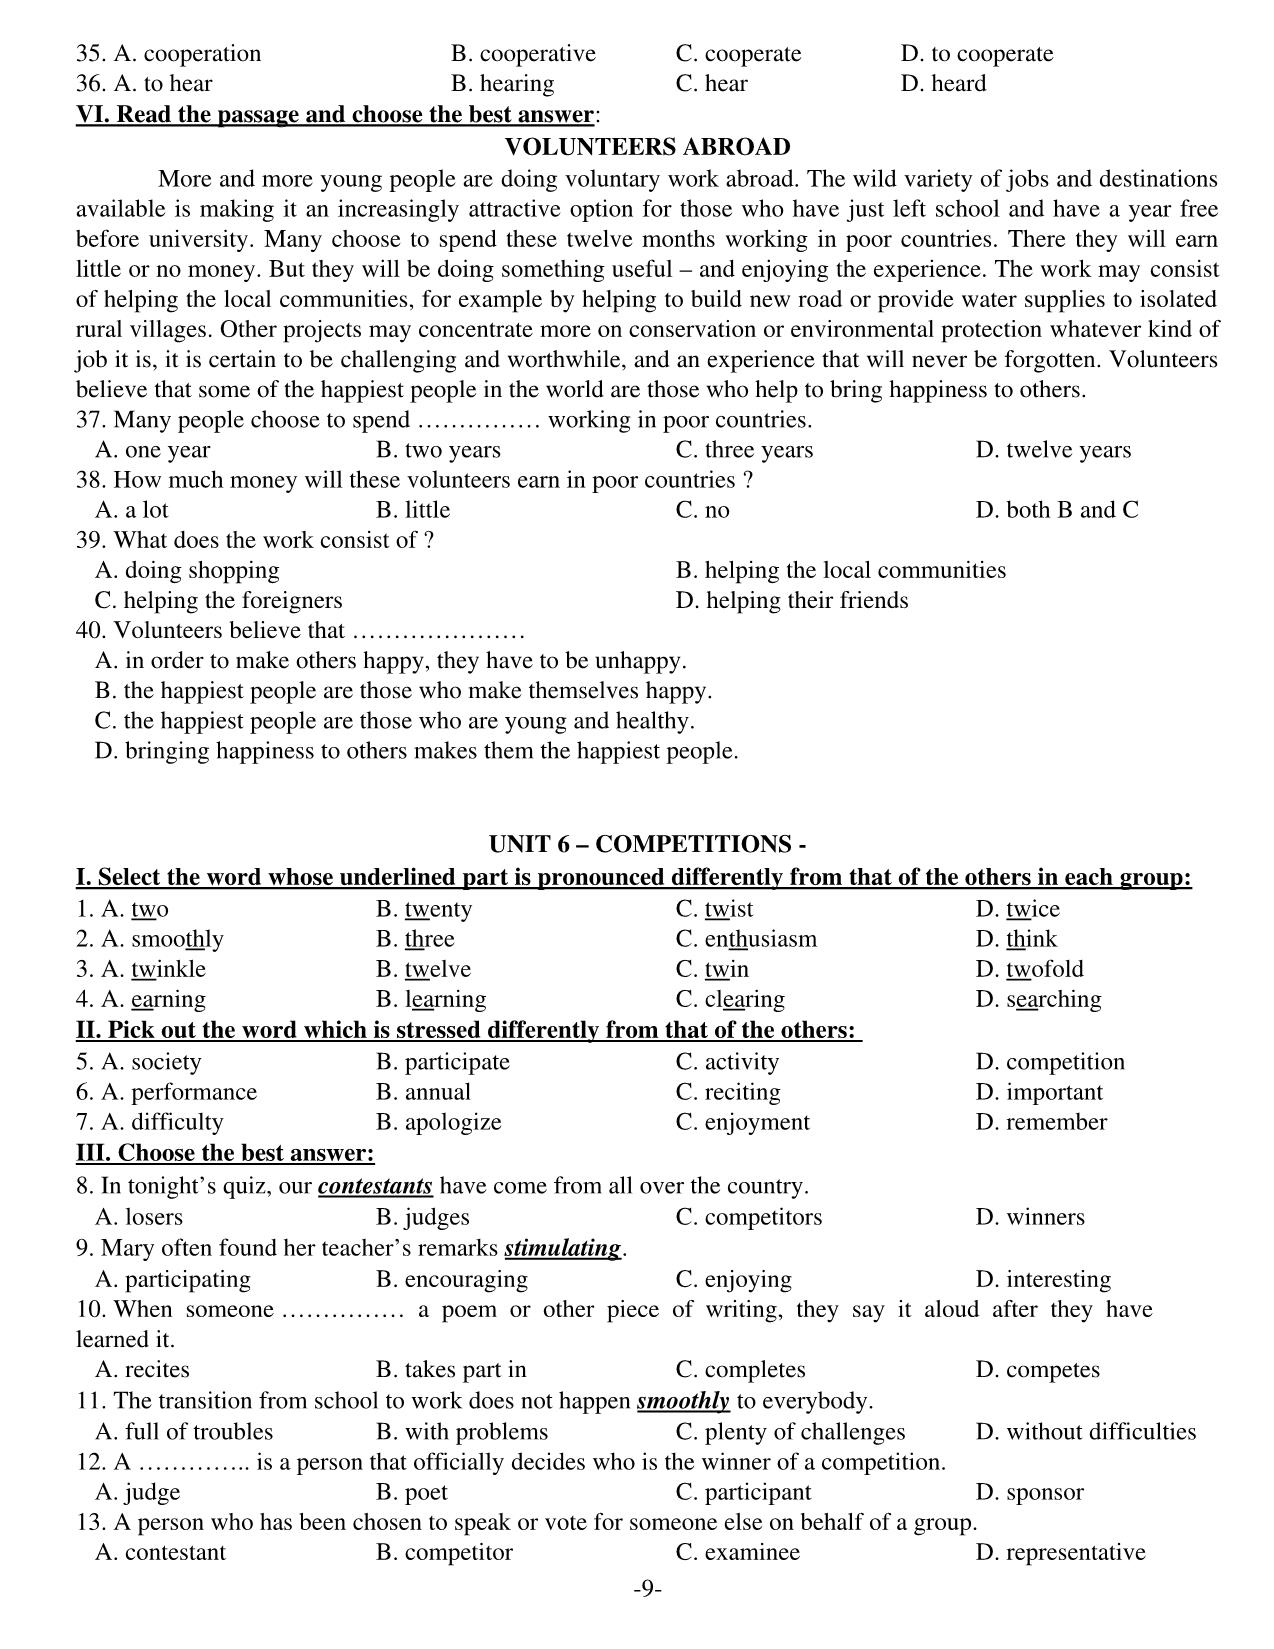 Đề cương ôn tập học kì 1 môn Anh văn Lớp 11 - Năm học 2014-2015 trang 9